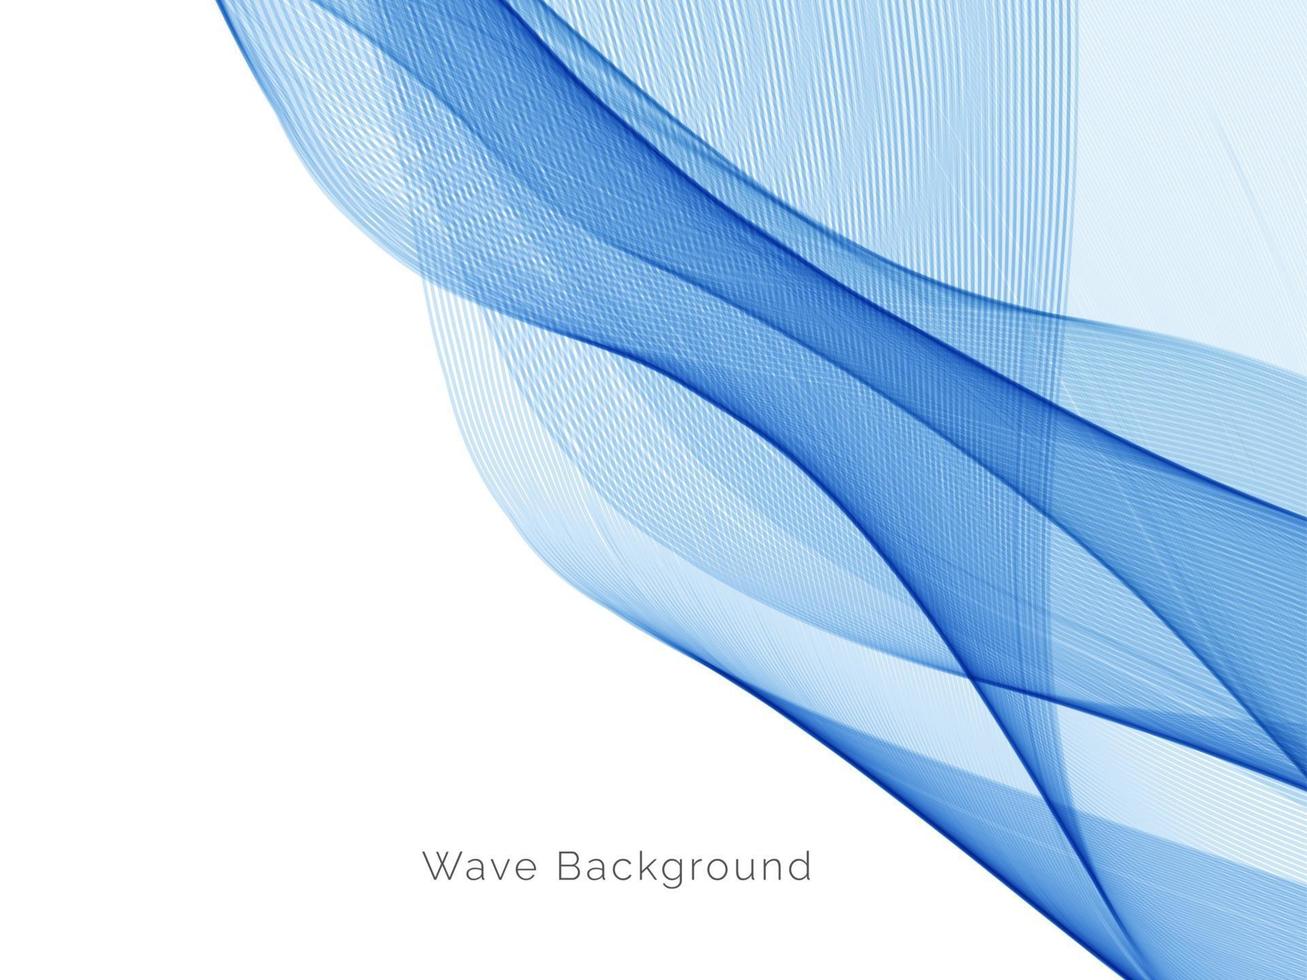 dekorativer Hintergrund des abstrakten blauen Wellenentwurfs vektor